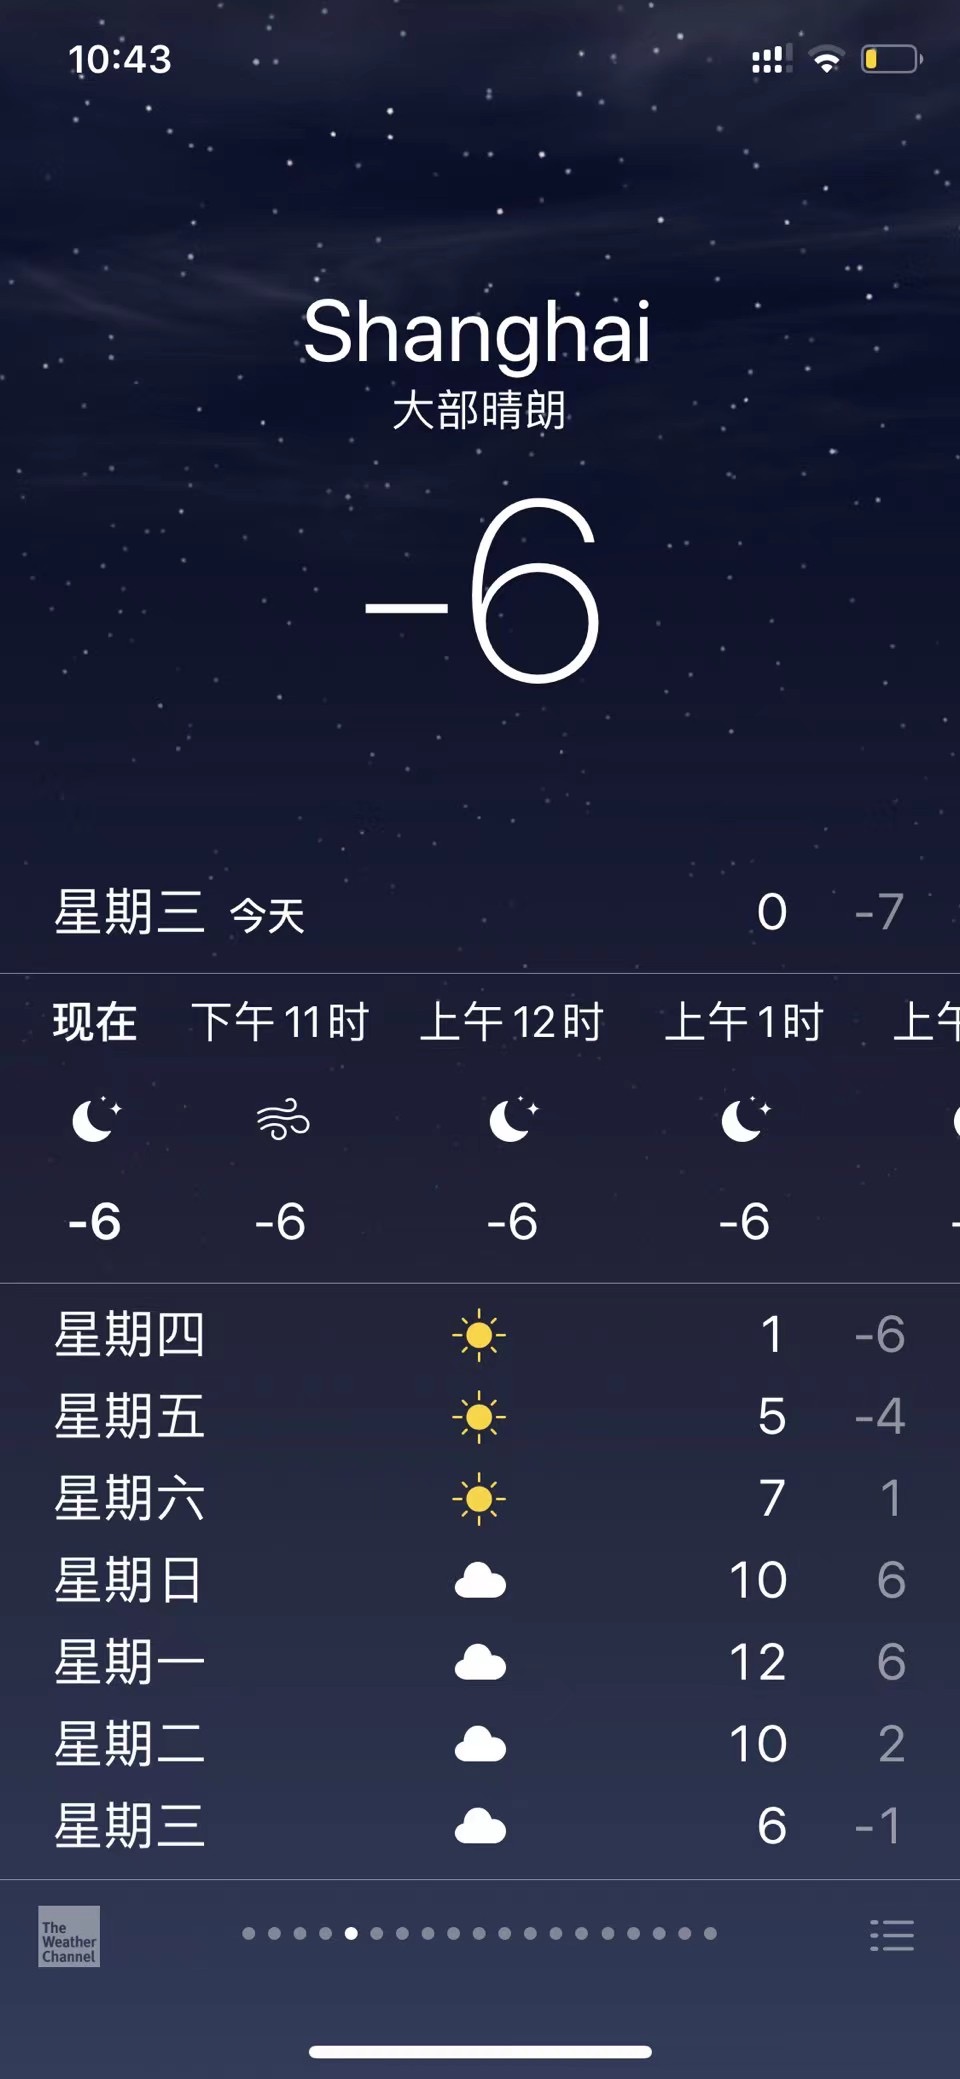 Shanghai weather forecast